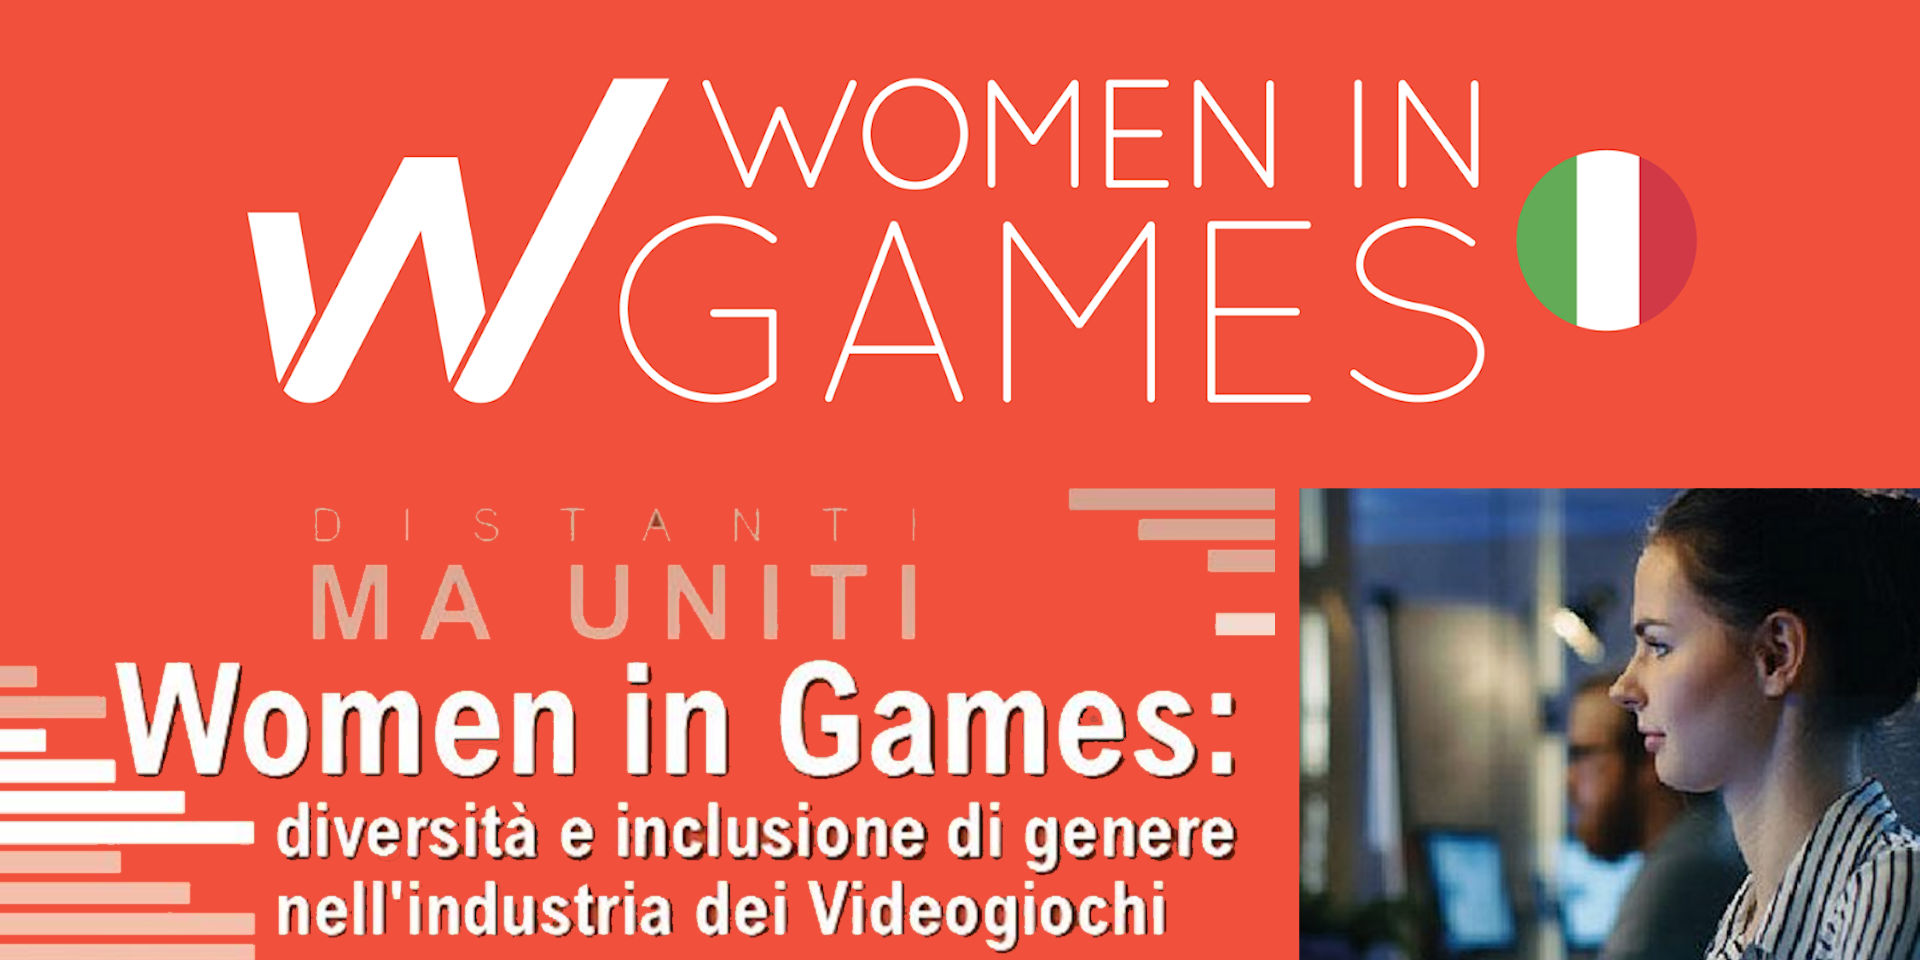 Diversità e inclusione di genere nell’industria dei Videogiochi